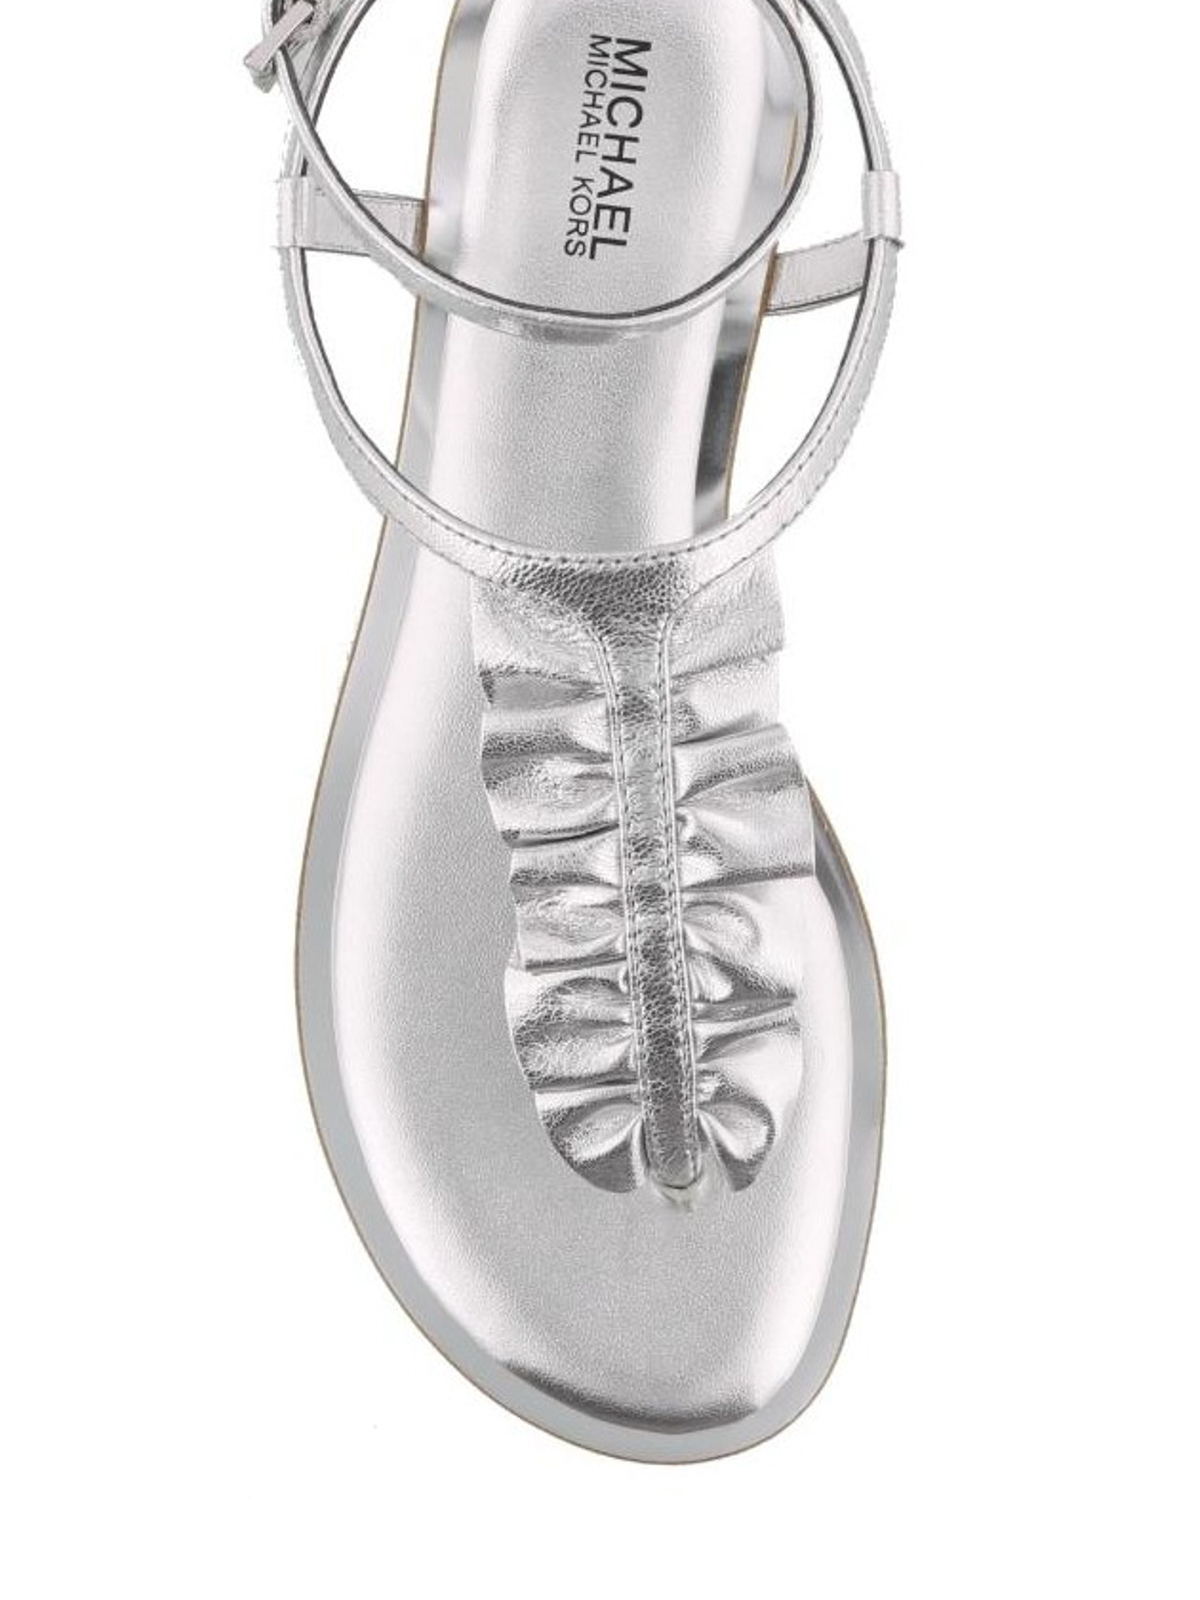 Michael Kors Logo Plate Silver Glitter Jelly Sandal  Retro Designer Wear